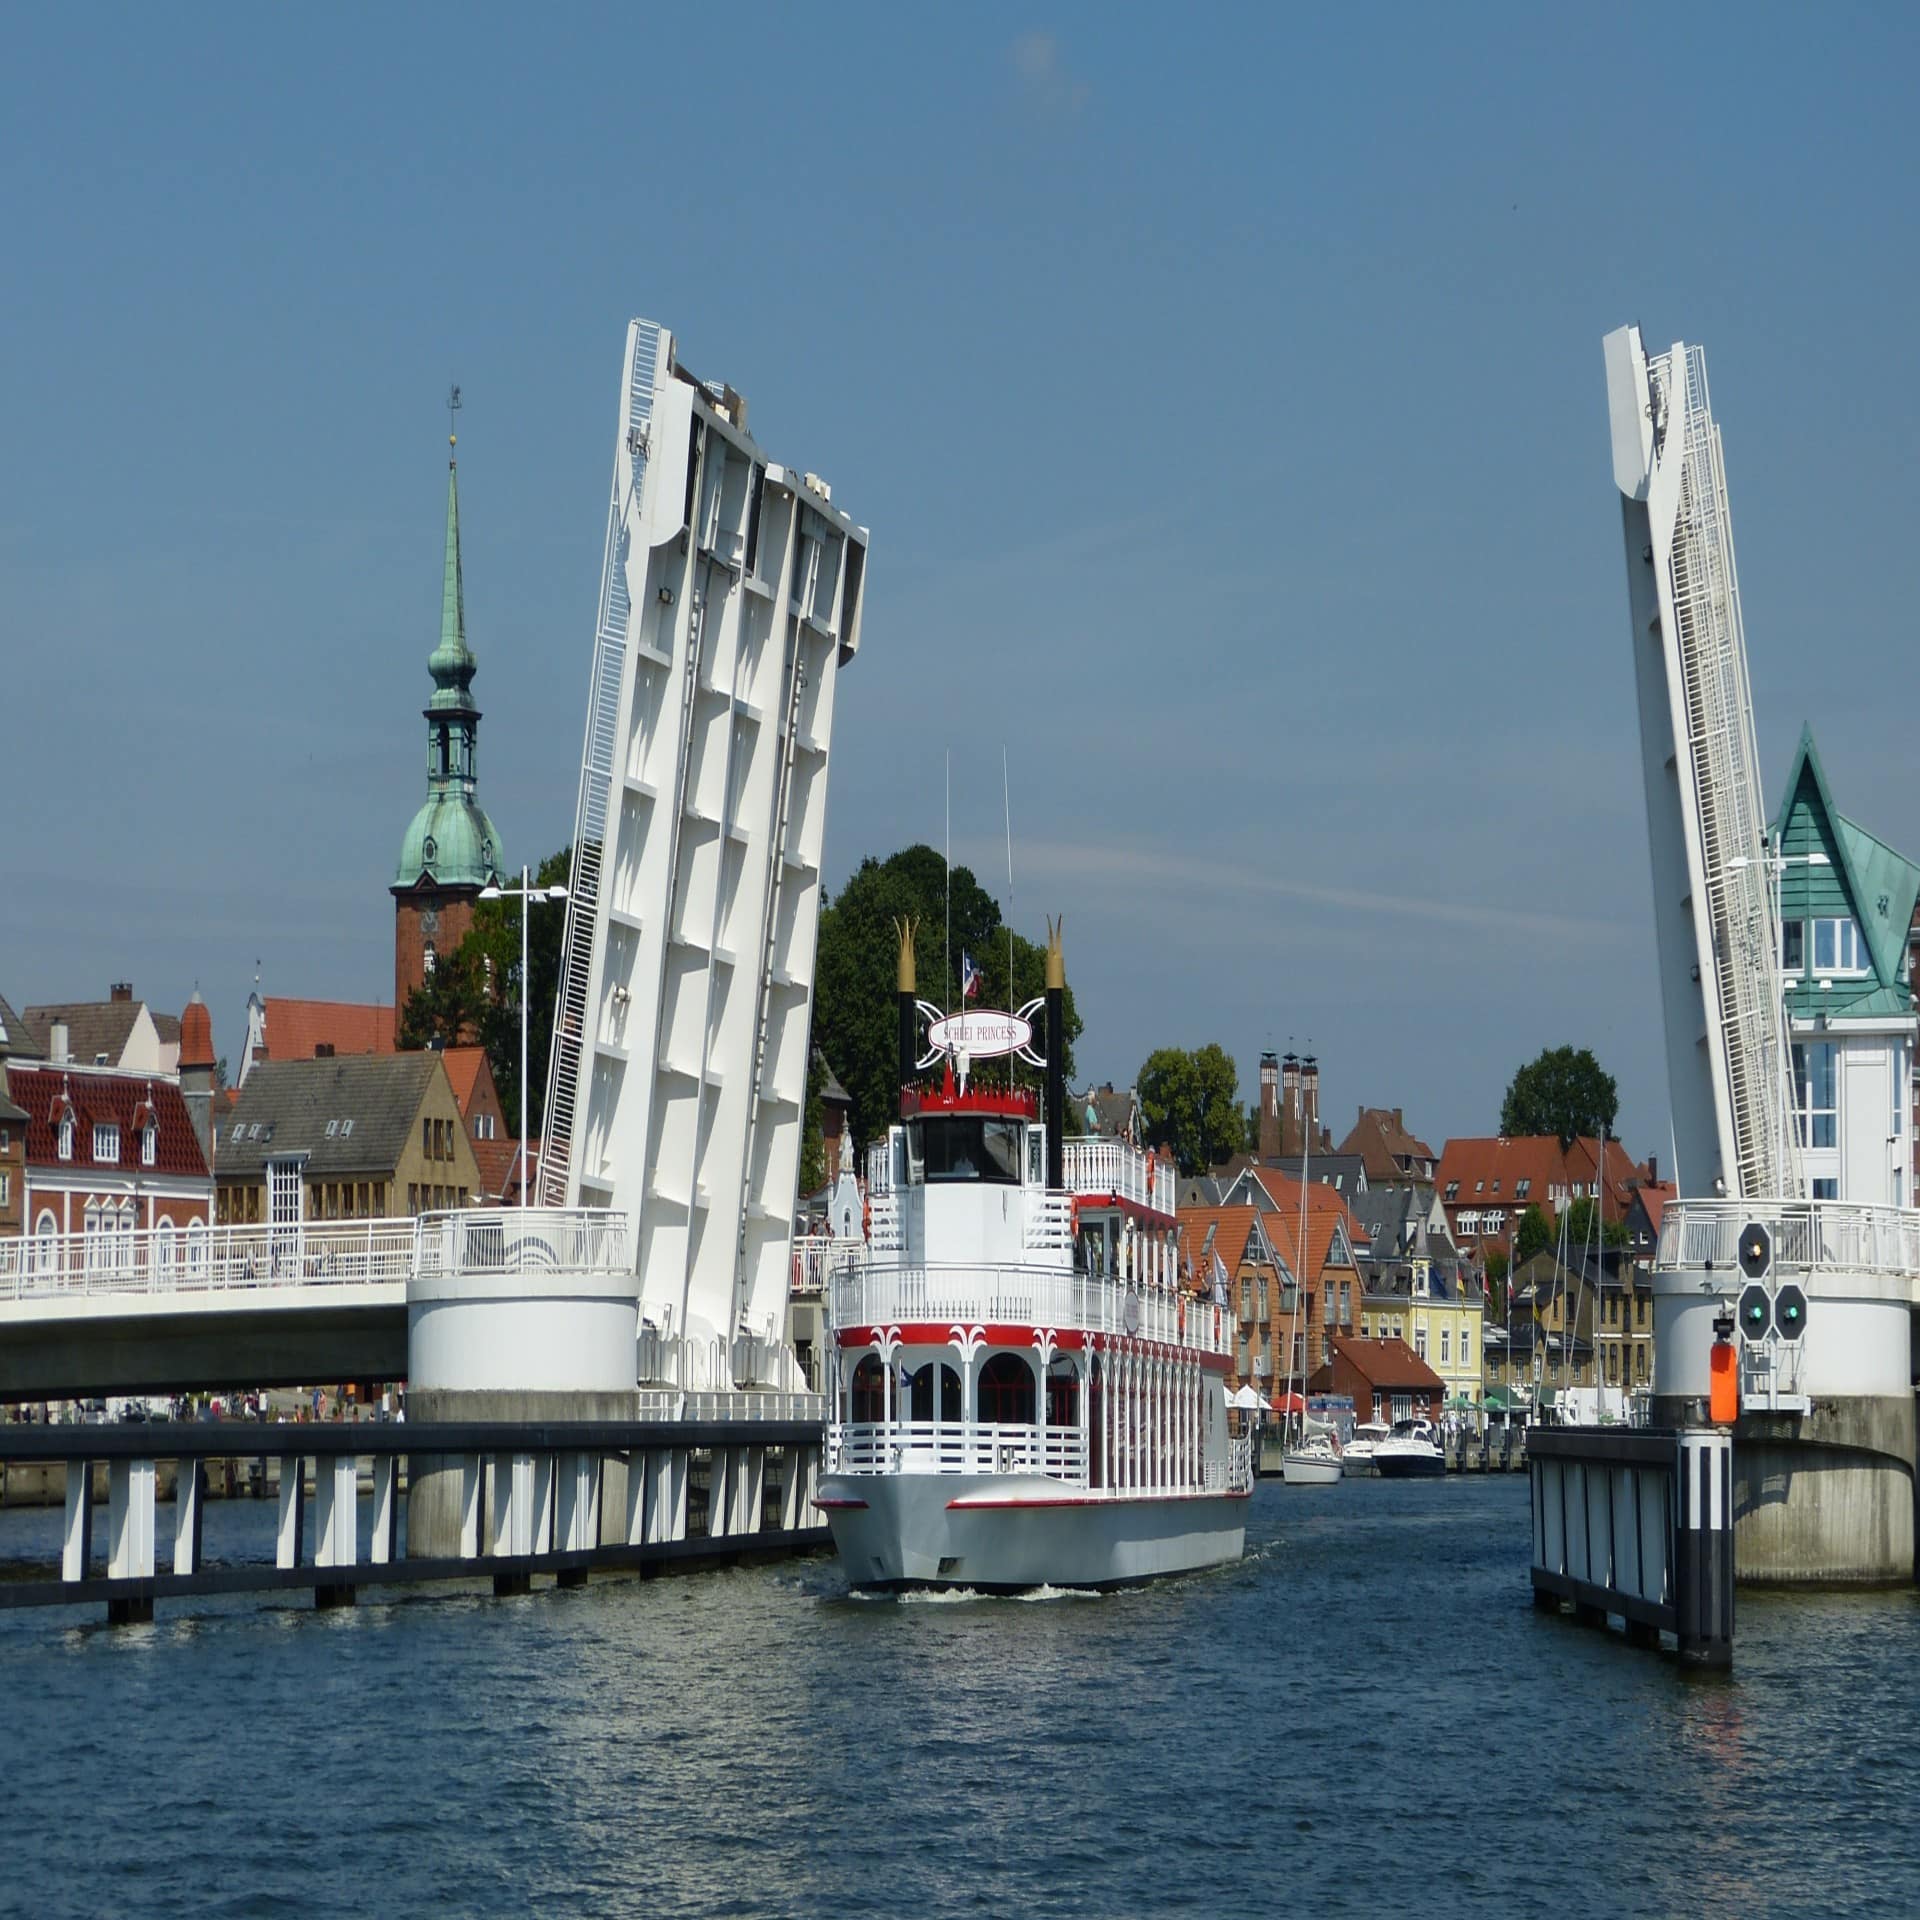 Ein weißes Schiff fährt unter der geöffneten Klappbrücke durch, im Hintergrund Hafen und Häuser von Kappeln.